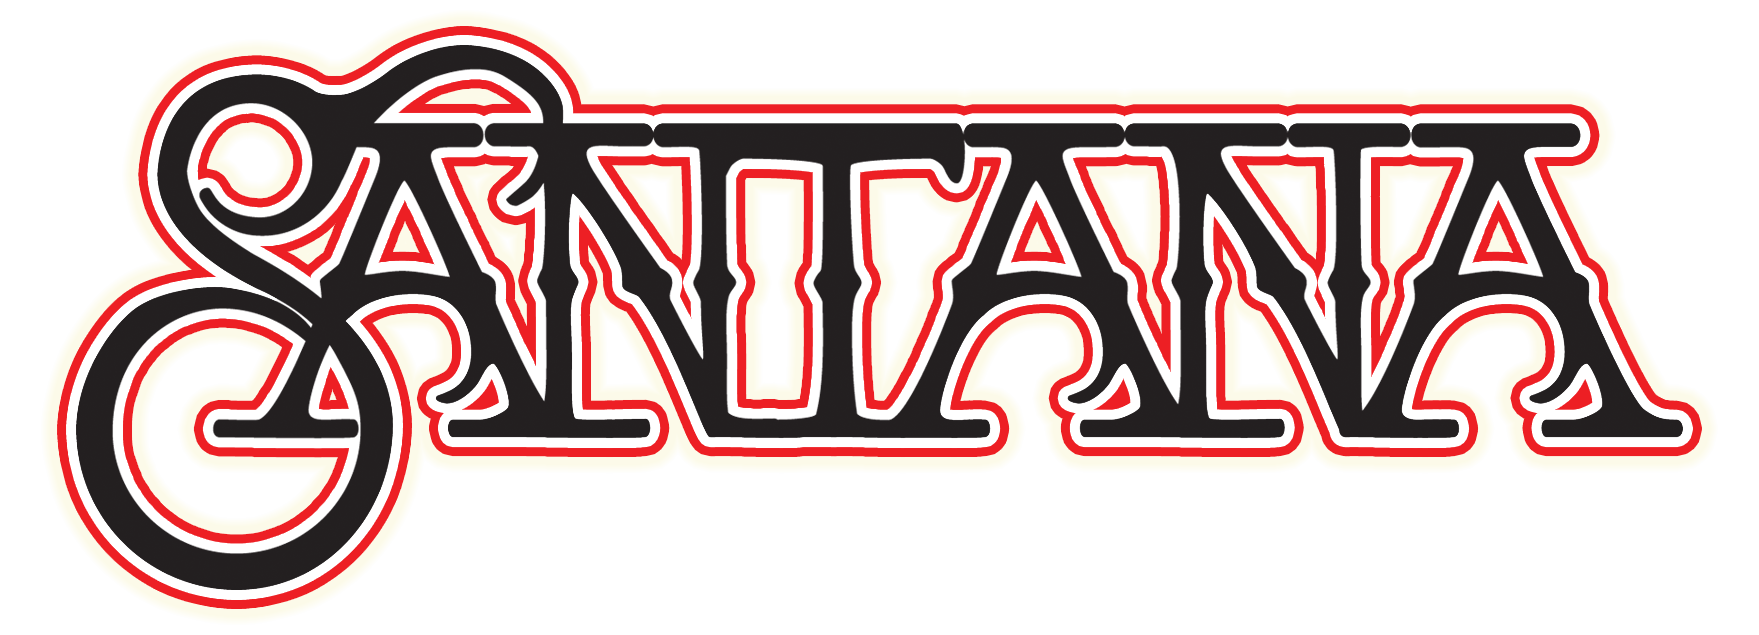 Santana Logo - Carlos Santana logo fonts